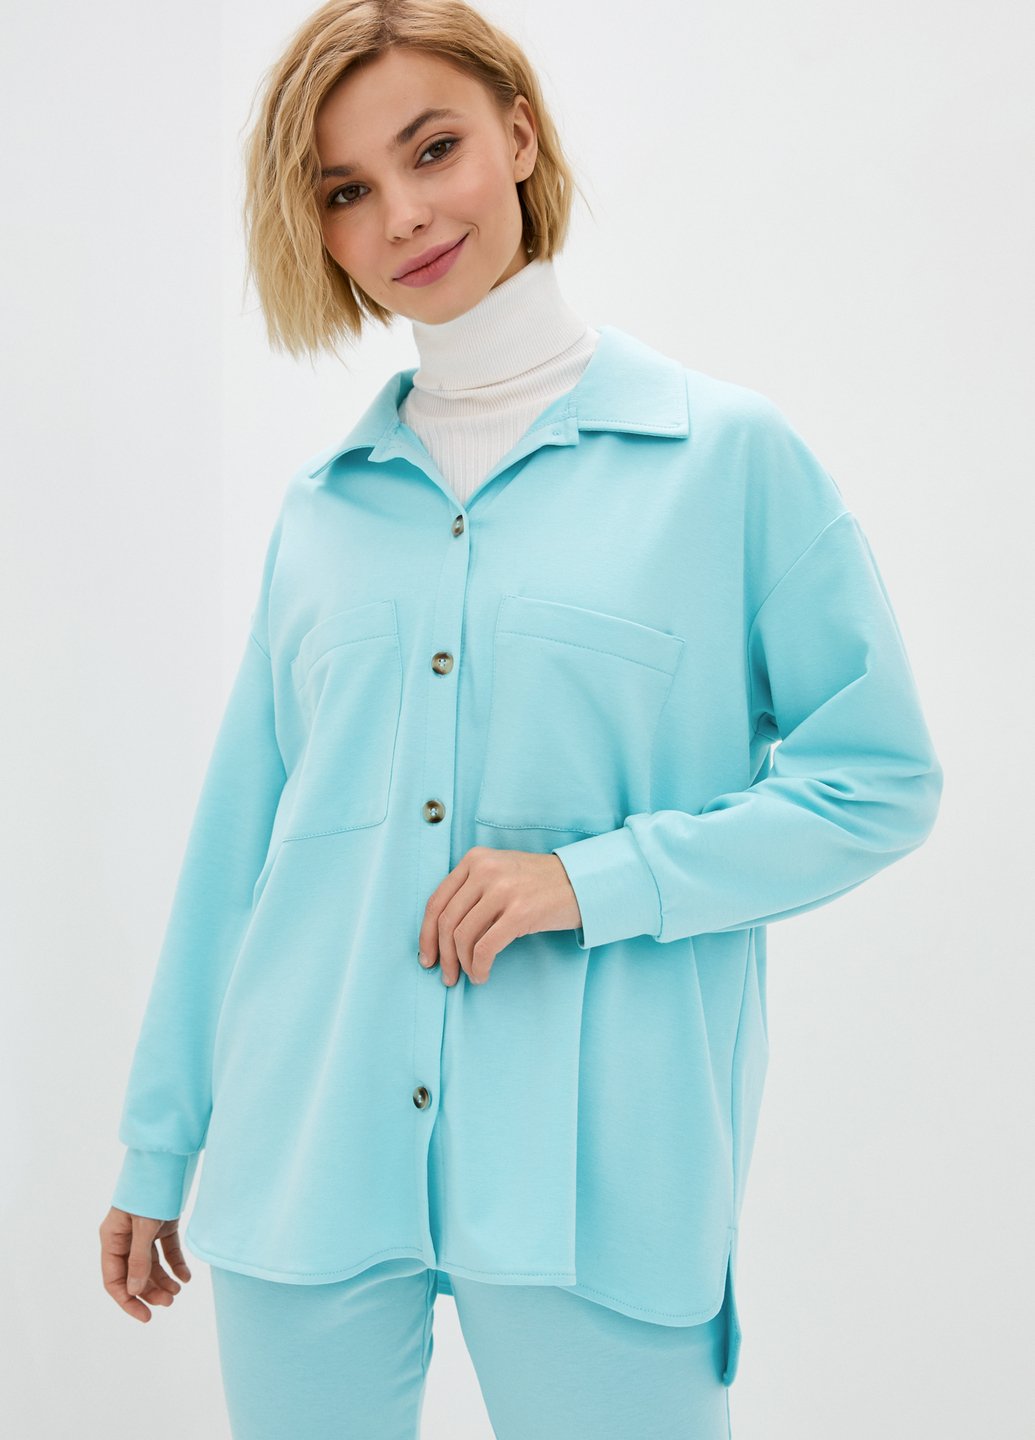 Купить Рубашка женская трикотажная оверсайз Merlini Йорк 200000061 - Голубой, 42-44 в интернет-магазине